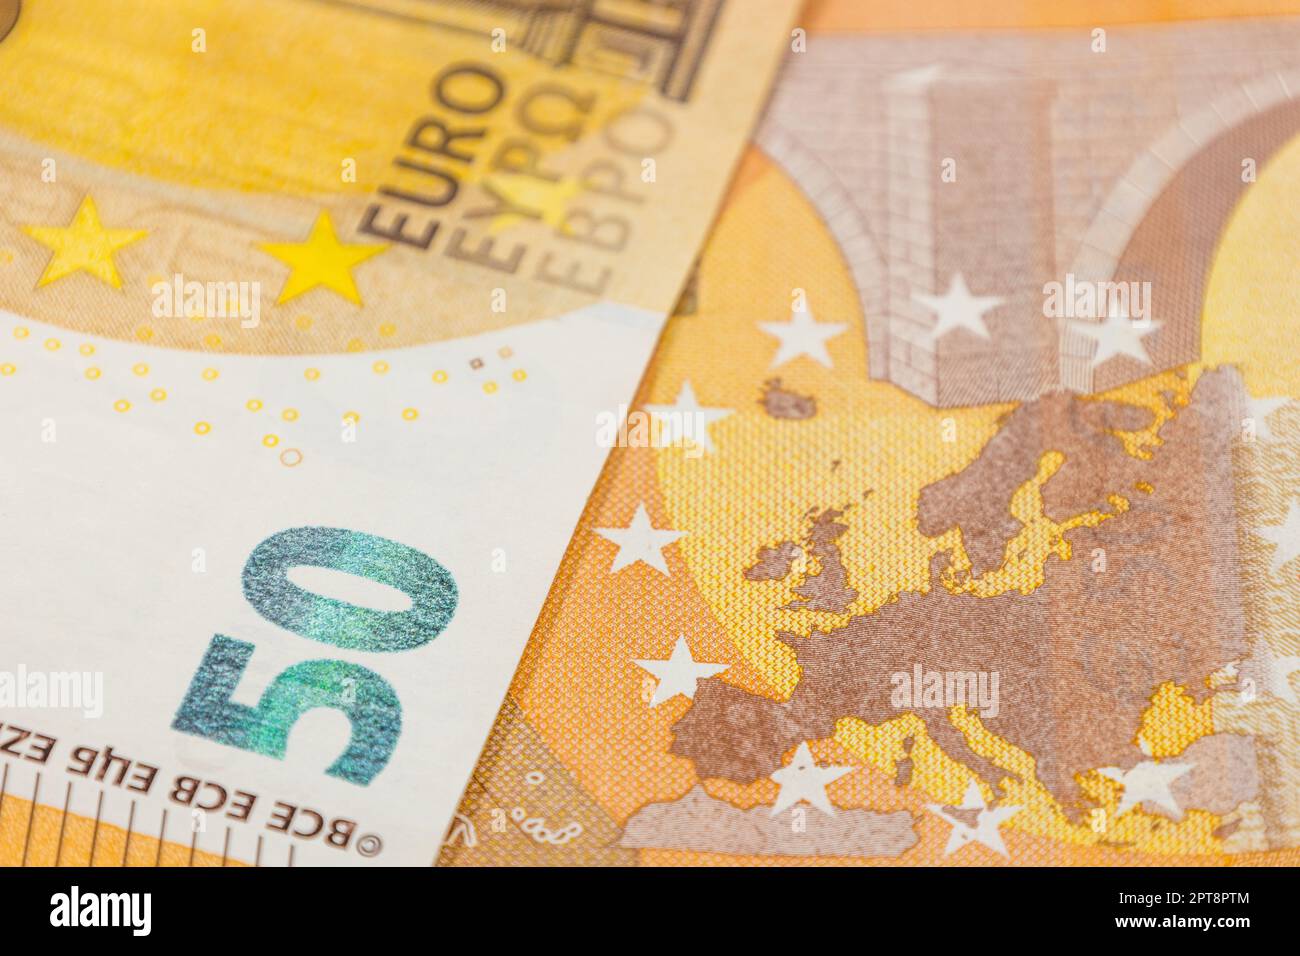 Europakarte auf einer 50-Euro-Banknote. Konzept der Vereinigung europäischer Länder. Stockfoto